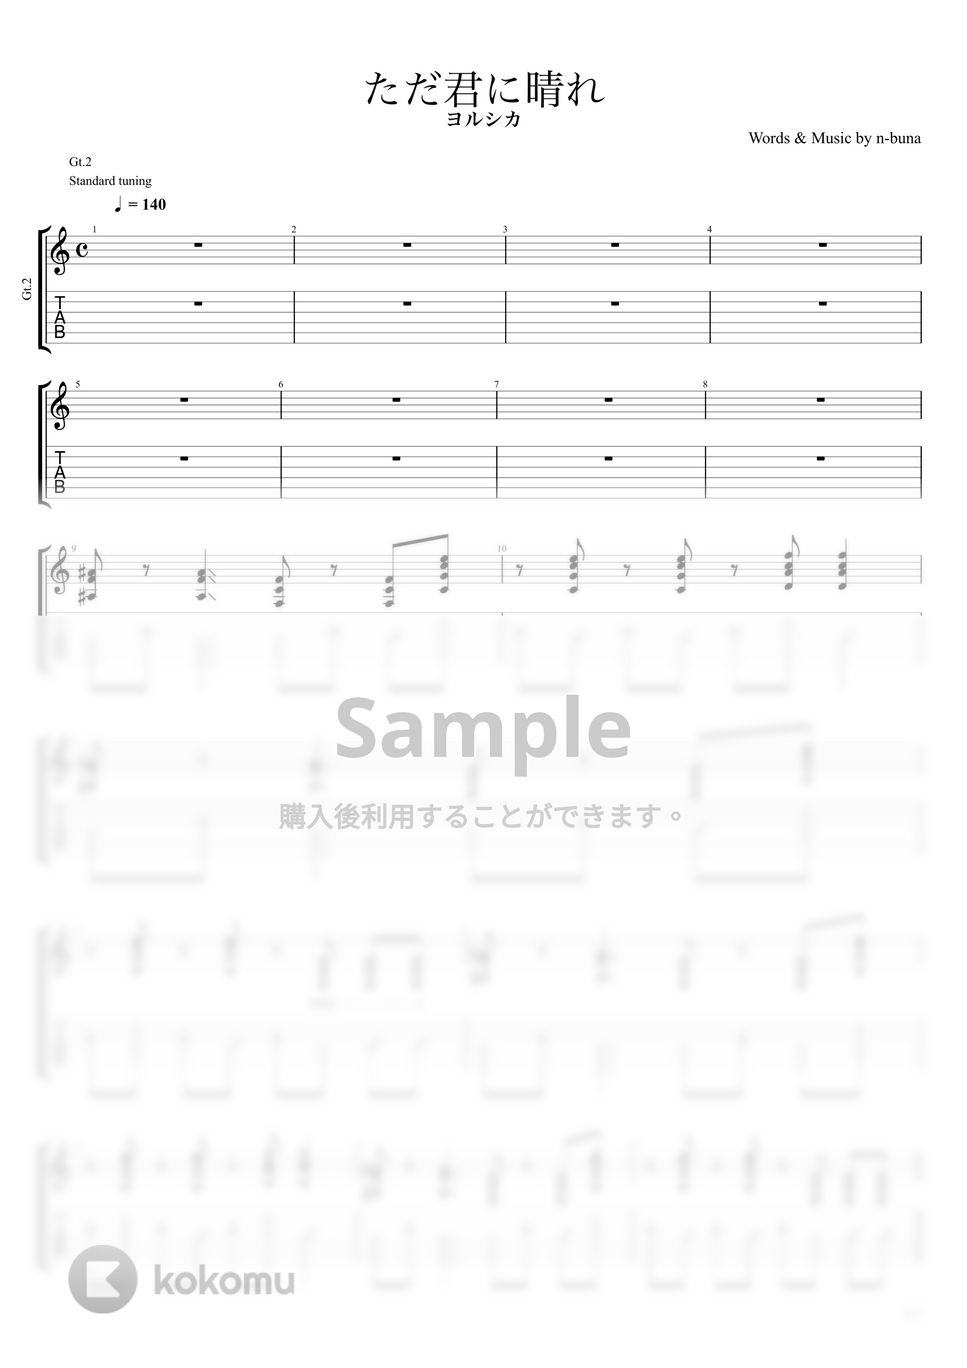 ヨルシカ - ただ君に晴れ (バッキングギターPart) by キリギリス